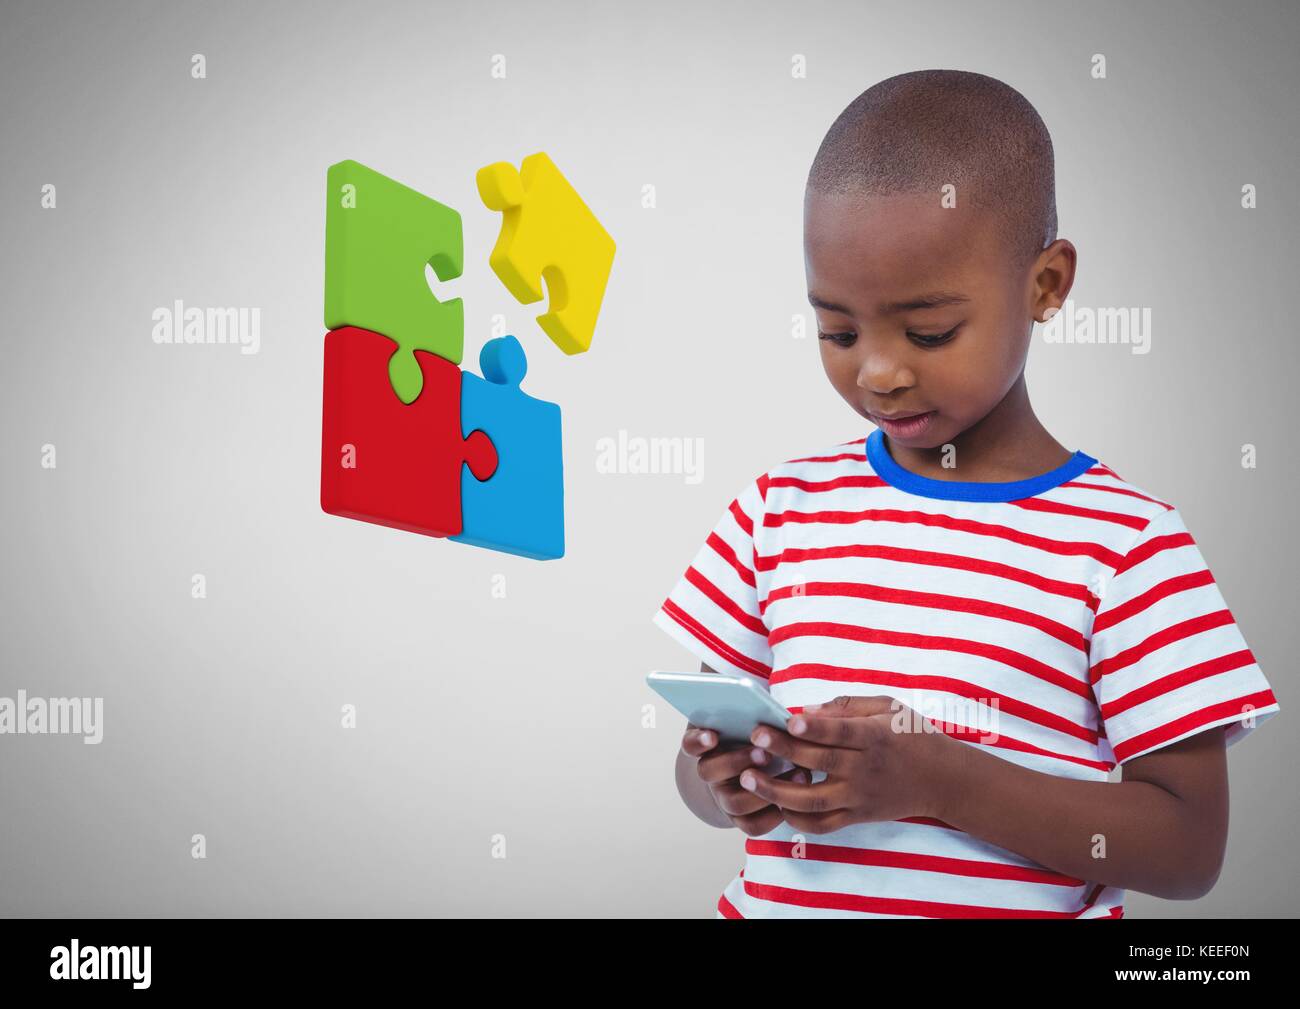 Digital composite der Junge gegen den grauen Hintergrund mit Telefon und Puzzle Stücke Stockfoto